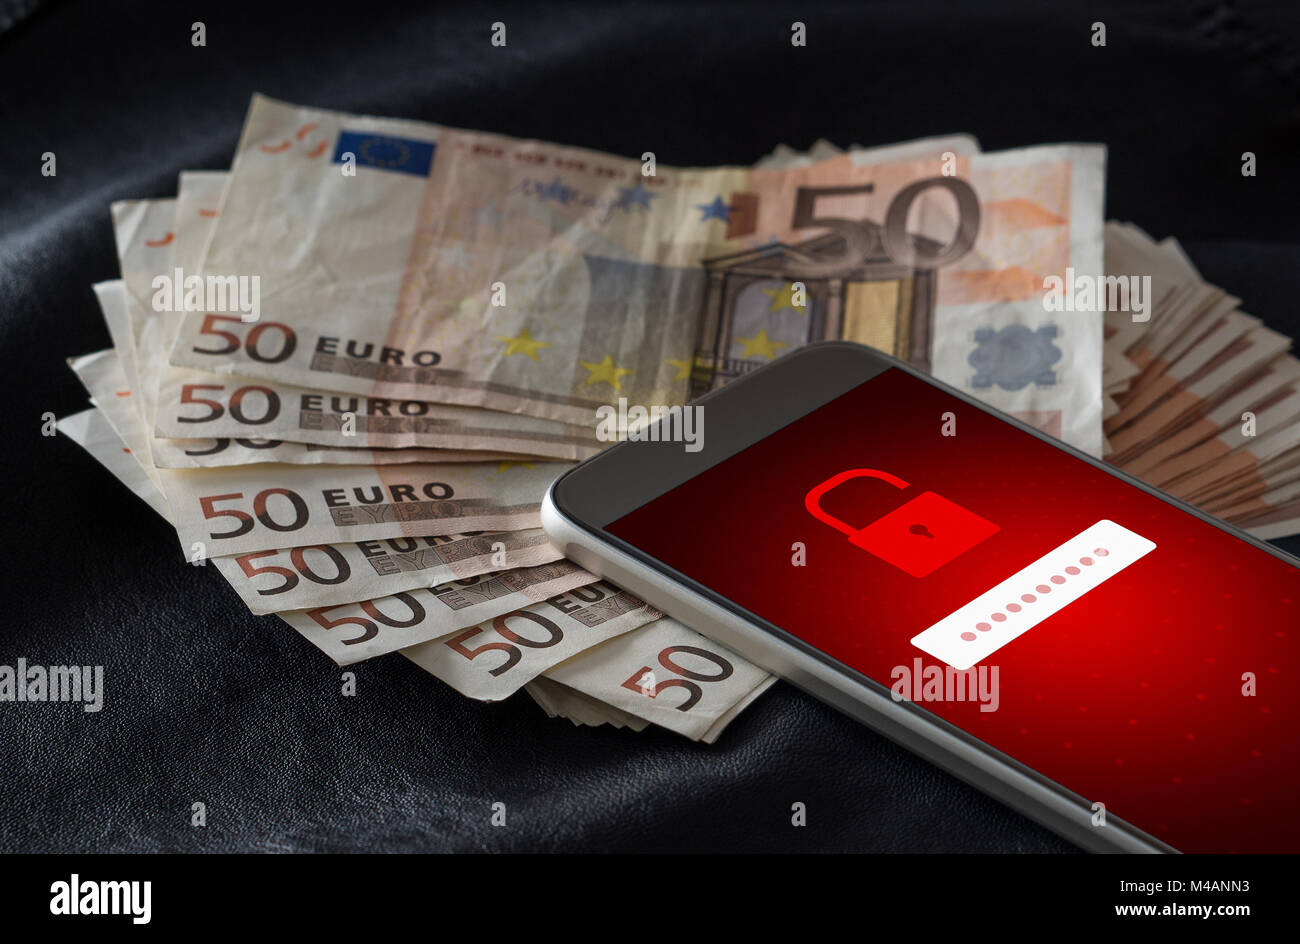 Gehackt. Cyber Security und mobile hacking Konzept. Smartphone und eine Menge Geld und 50 Euro Rechnungen. Online kriminellen Login zu persönlichen Informationen. Stockfoto